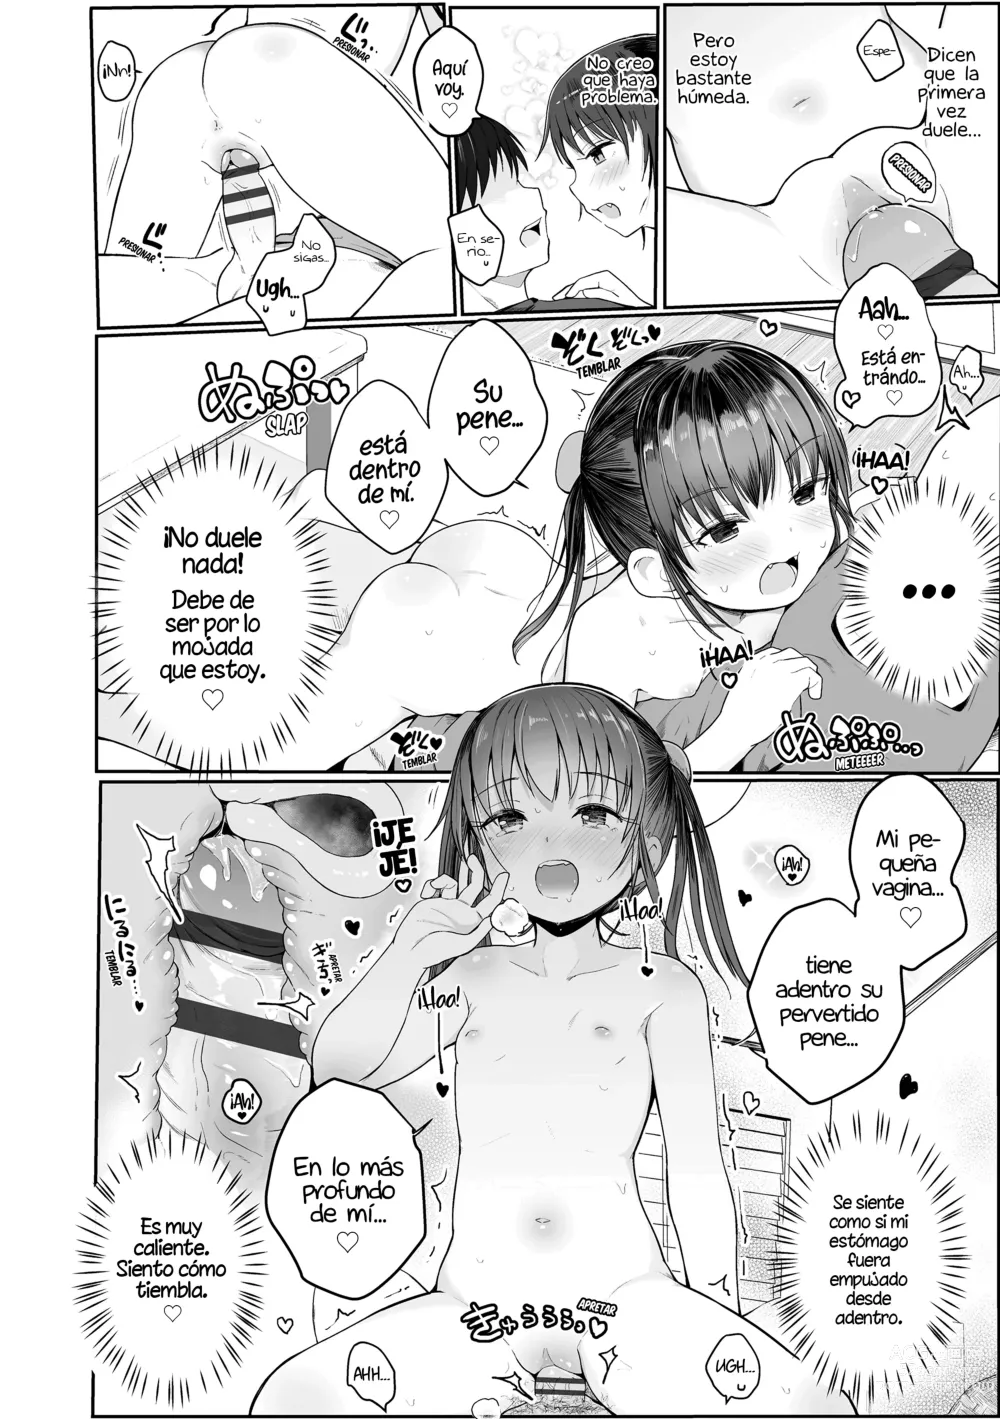 Page 16 of manga ¡Enséñame❤Sensei!